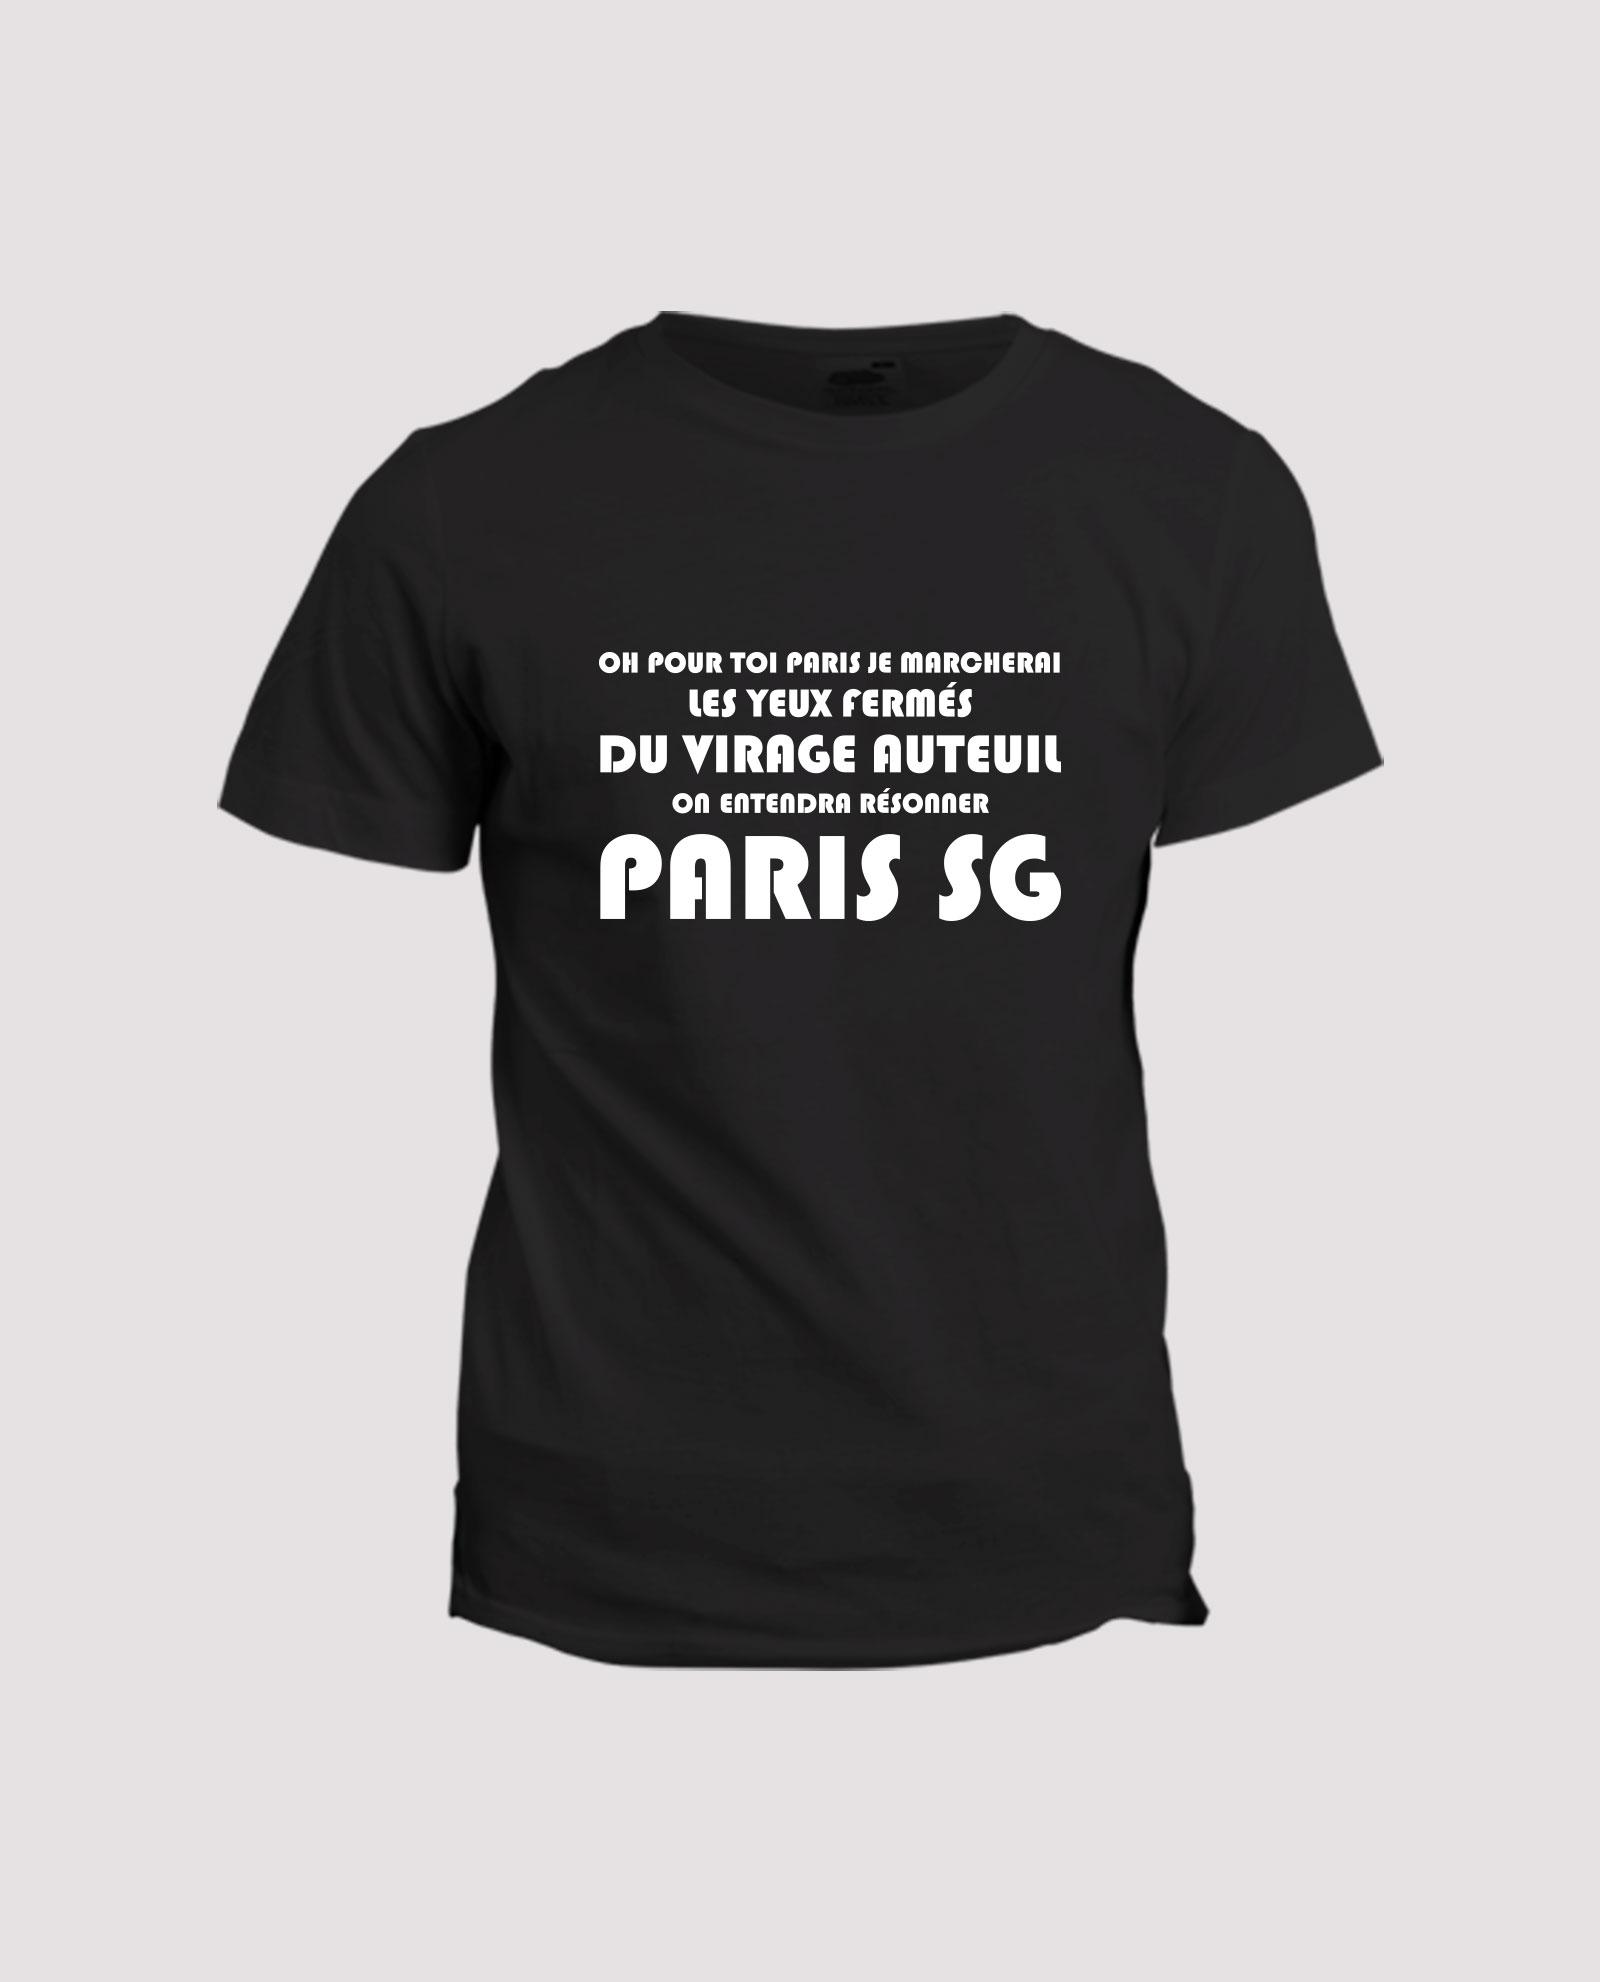 la-ligne-shop-t-shirt-oh-pour-toi-paris-je-marcherai-virage-auteuil-supporter-foot-football-psg-paris-parisien-v2